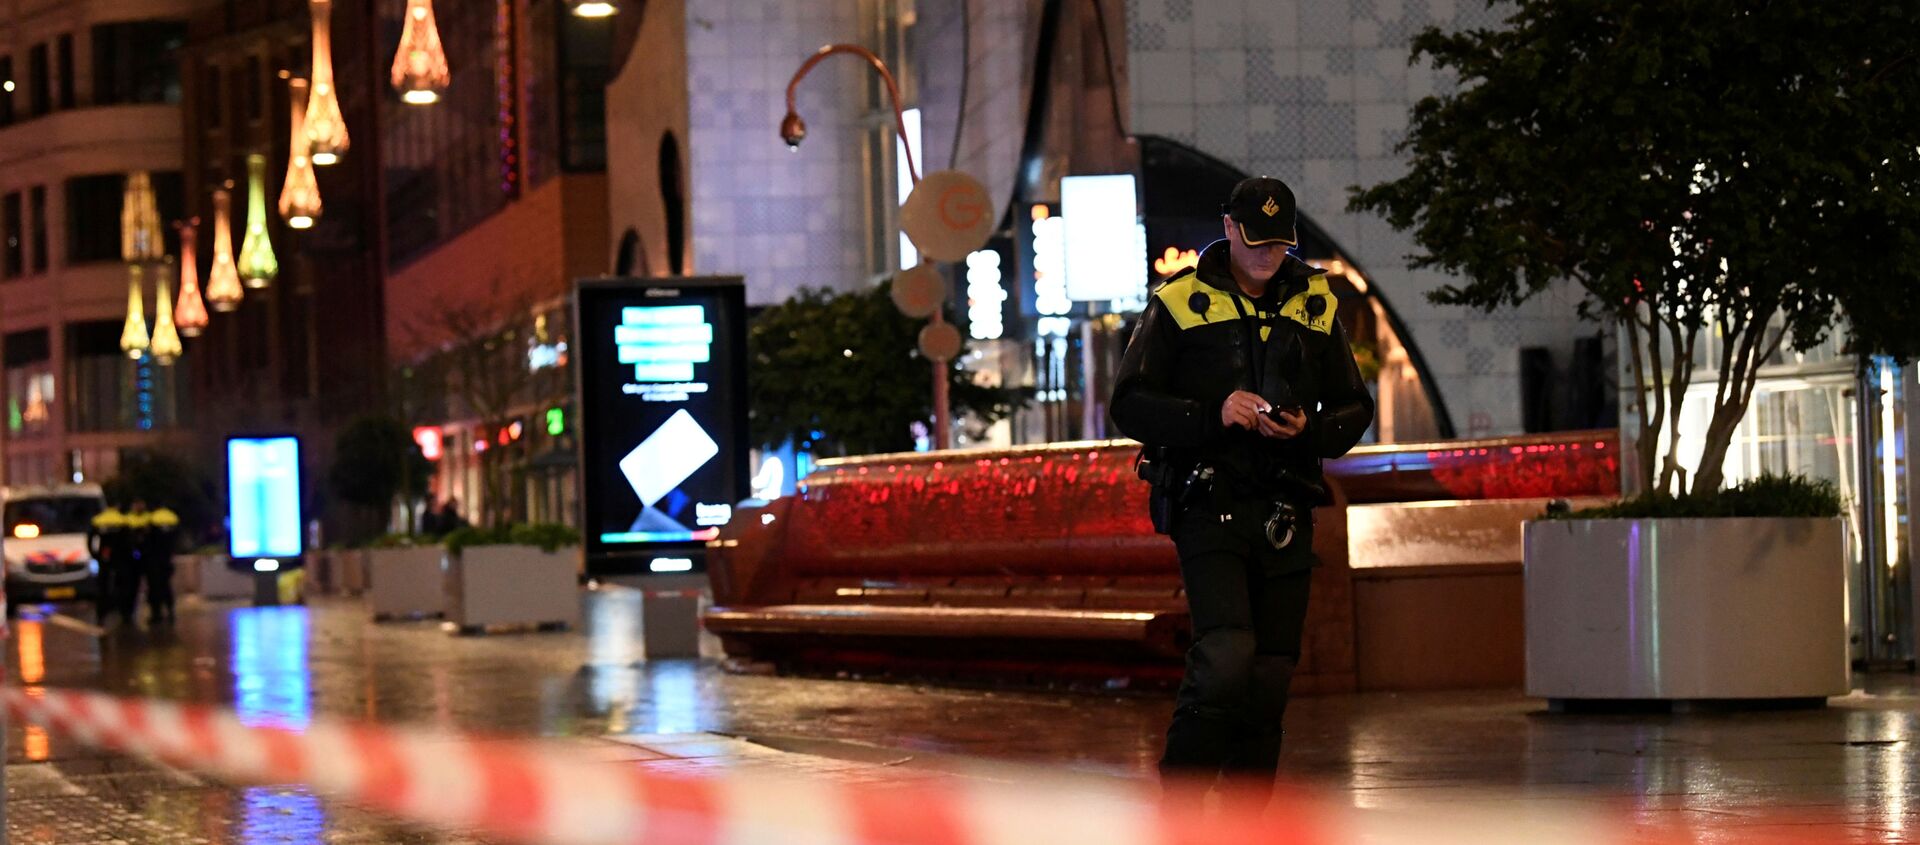 ضابط في الشرطة الهولندية يقف بالقرب من موقع حادث طعن في أحد شوارع التسوق في لاهاي، هولندا، 29 نوفمبر/تشرين الثاني 2019 - سبوتنيك عربي, 1920, 24.04.2020